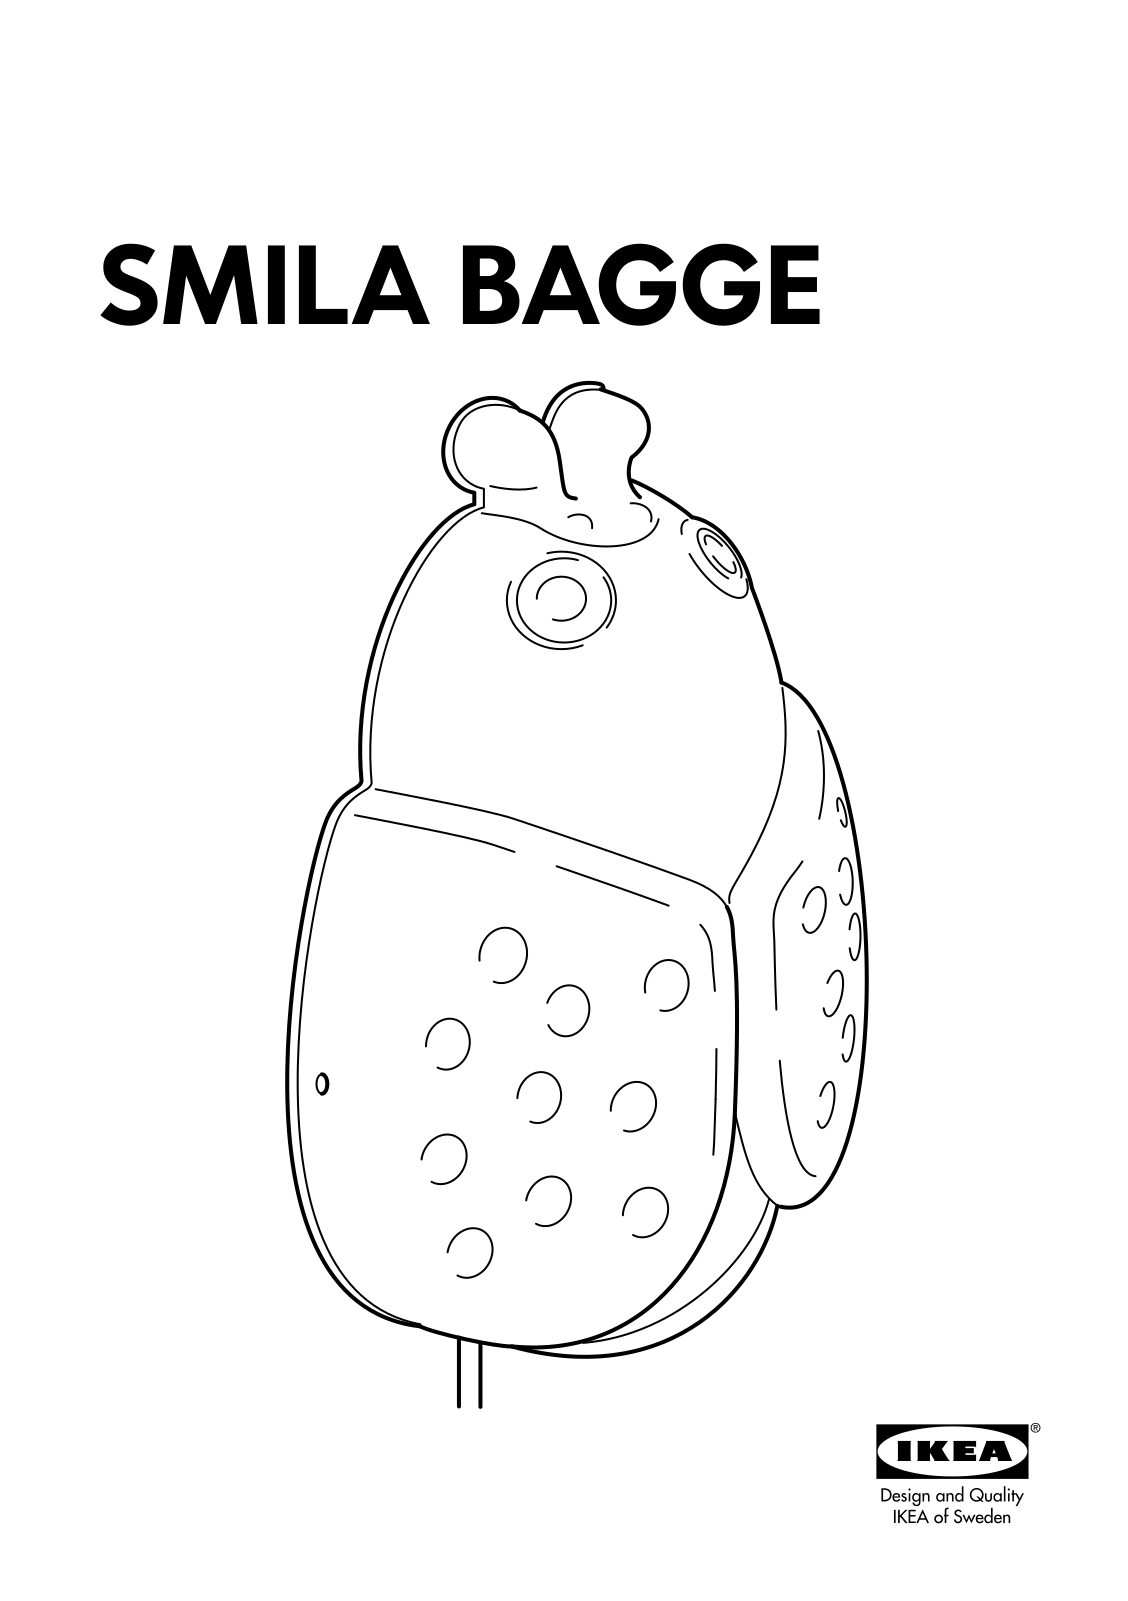 IKEA SMILA BAGGE User Manual